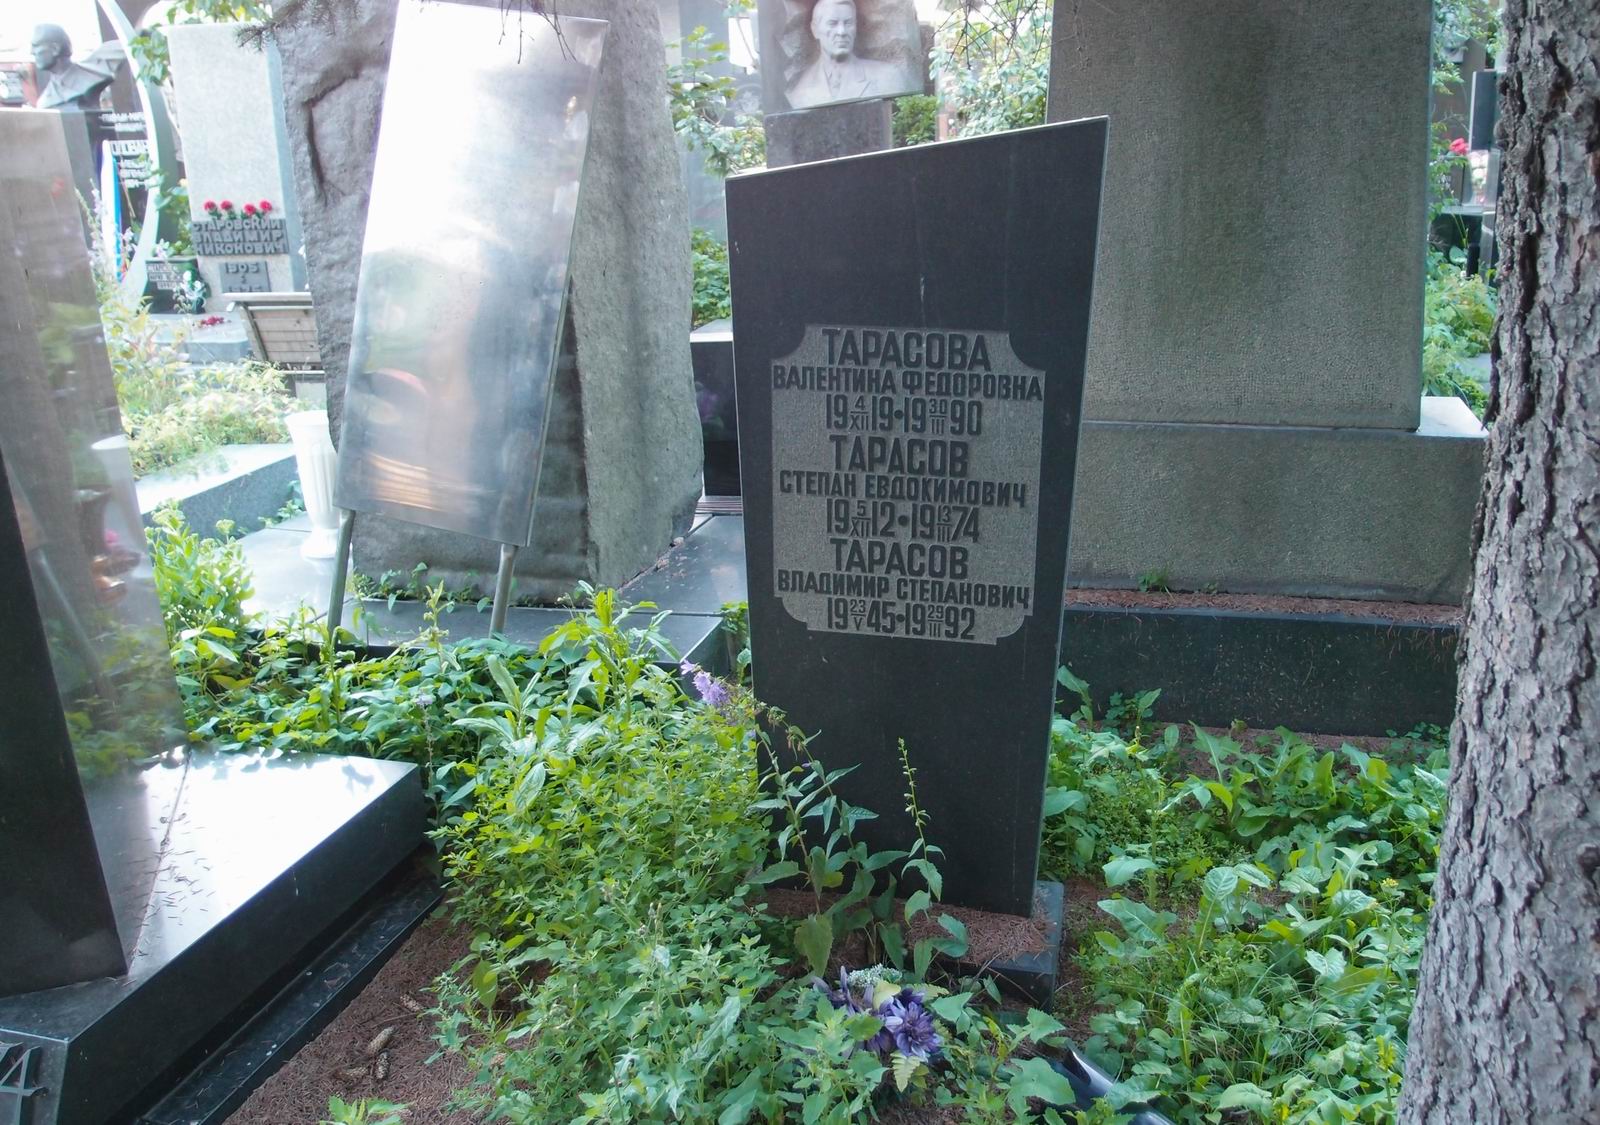 Памятник на могиле Тарасова С.Е. (1912-1974), на Новодевичьем кладбище (7-9-15).